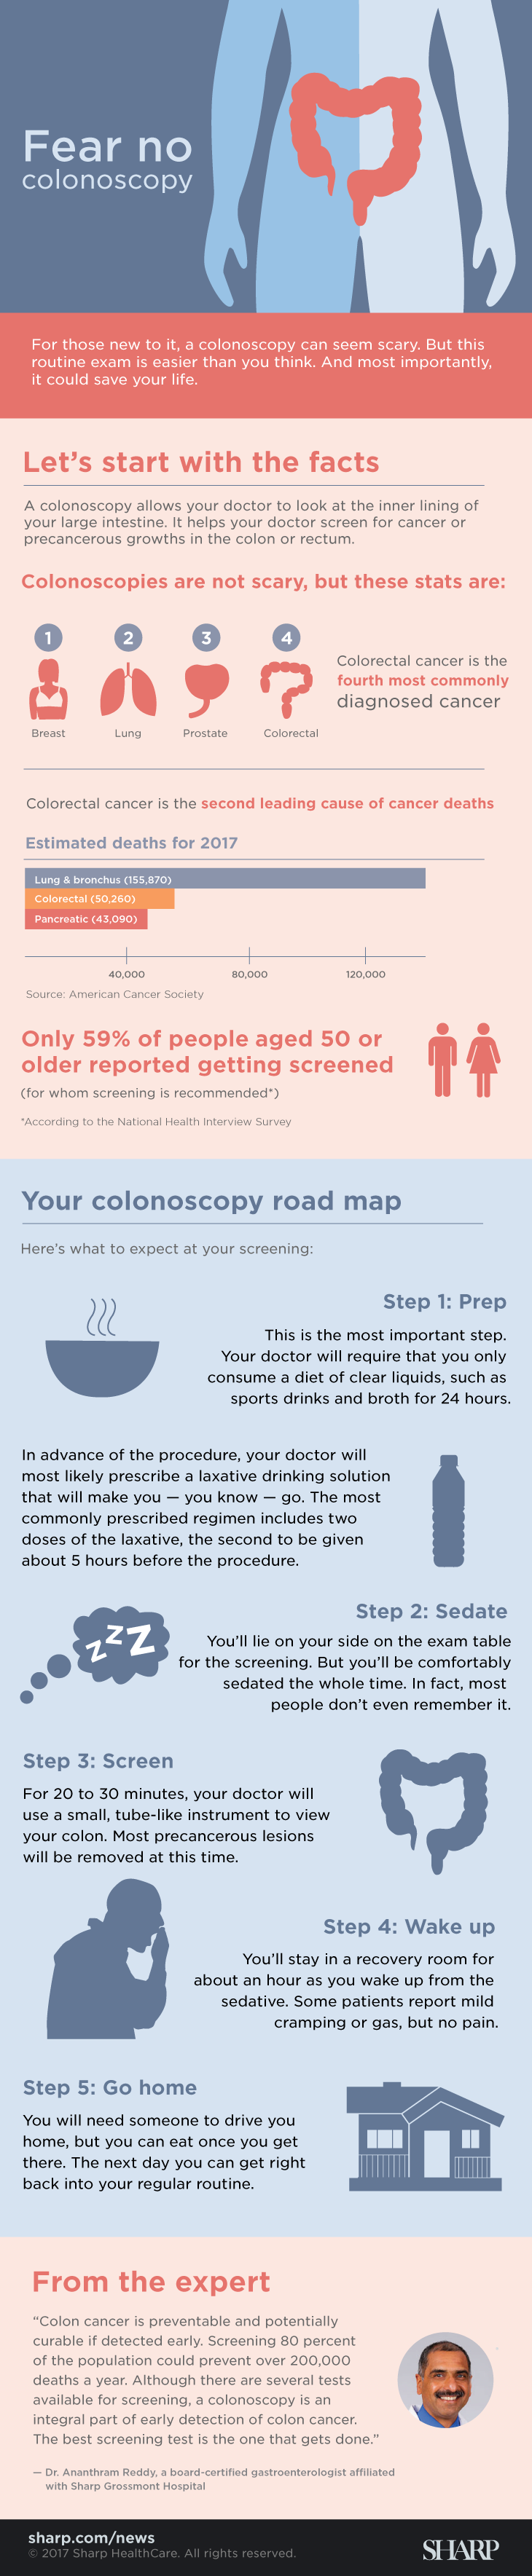 Fear no colonoscopy infographic